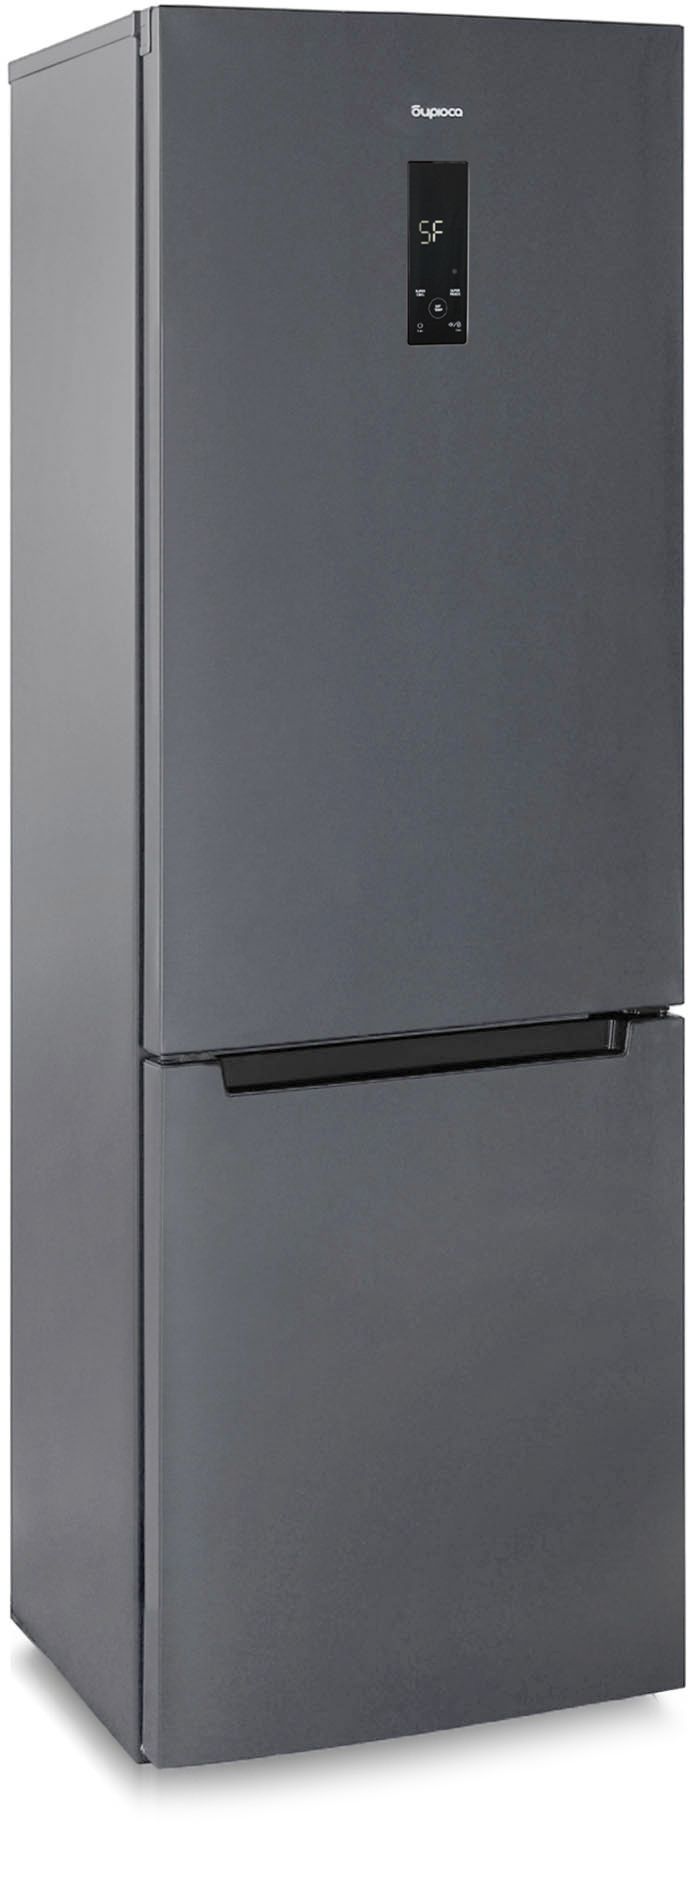 холодильник бирюса 960nf, купить в Красноярске холодильник бирюса 960nf,  купить в Красноярске дешево холодильник бирюса 960nf, купить в Красноярске минимальной цене холодильник бирюса 960nf